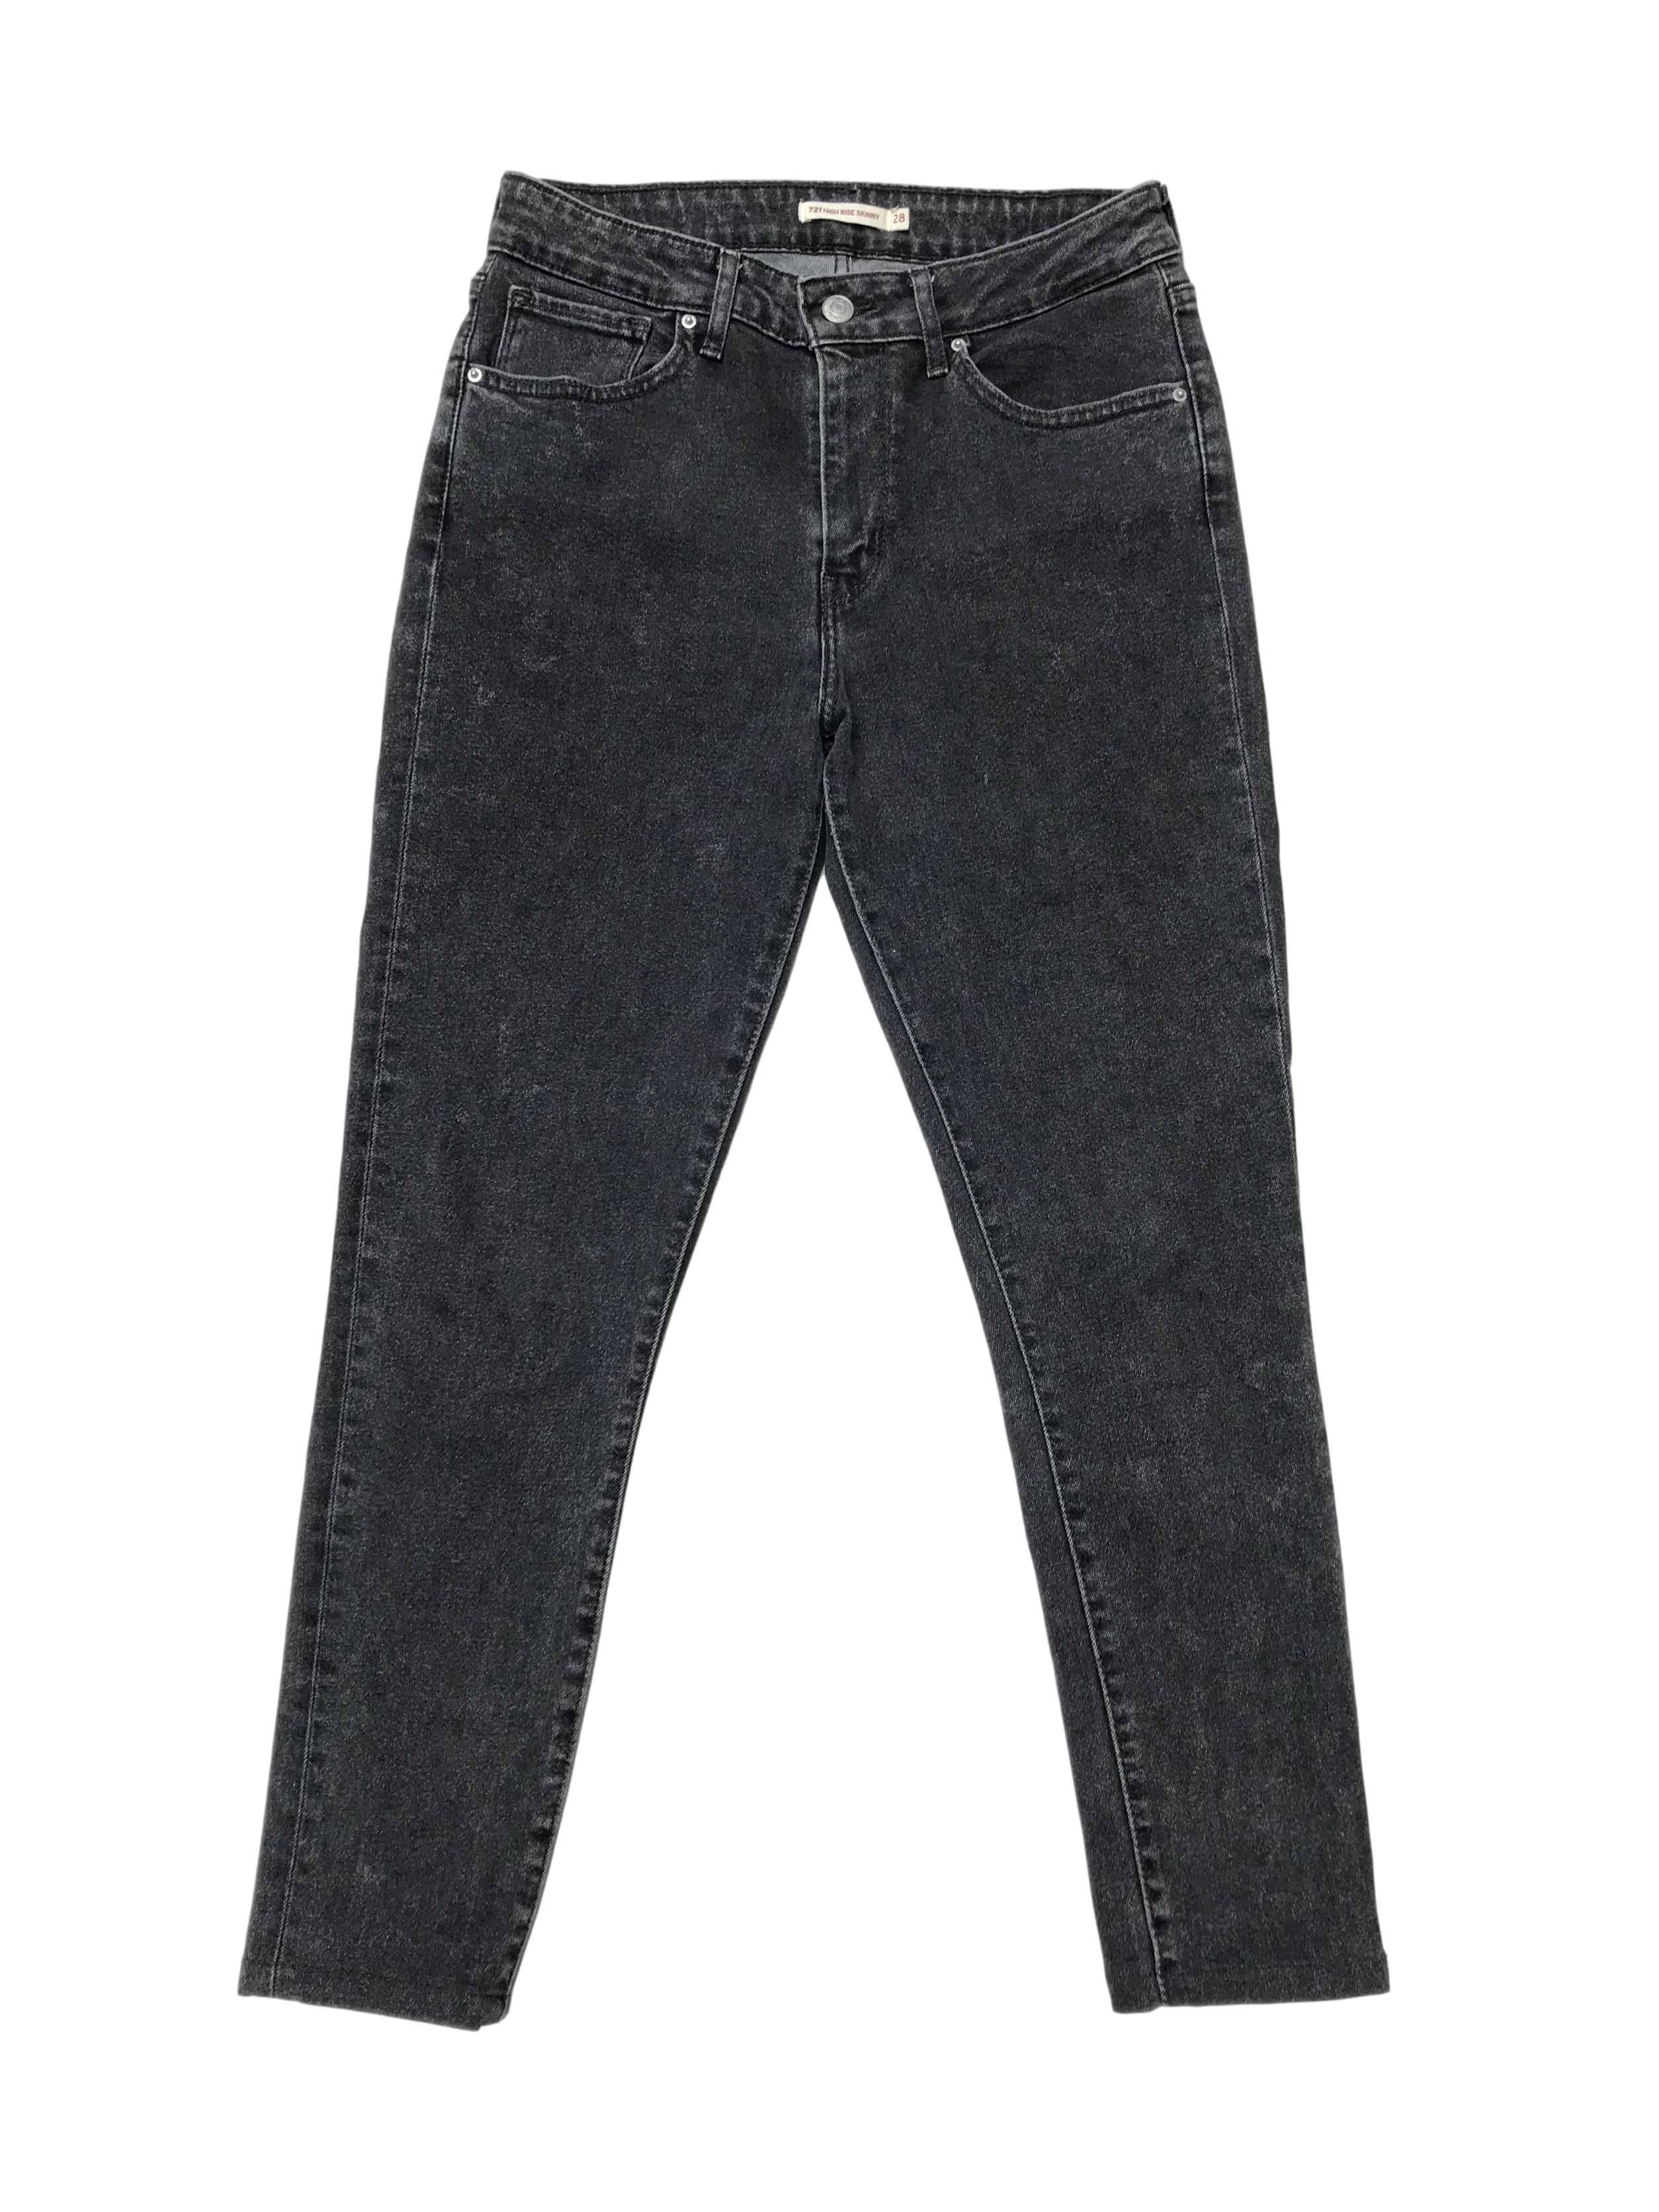 Pantalón jean Levis 721 high rise skinny gris efecto lavado, ligeramente stretch. Cintura 72cm Largo 92cm